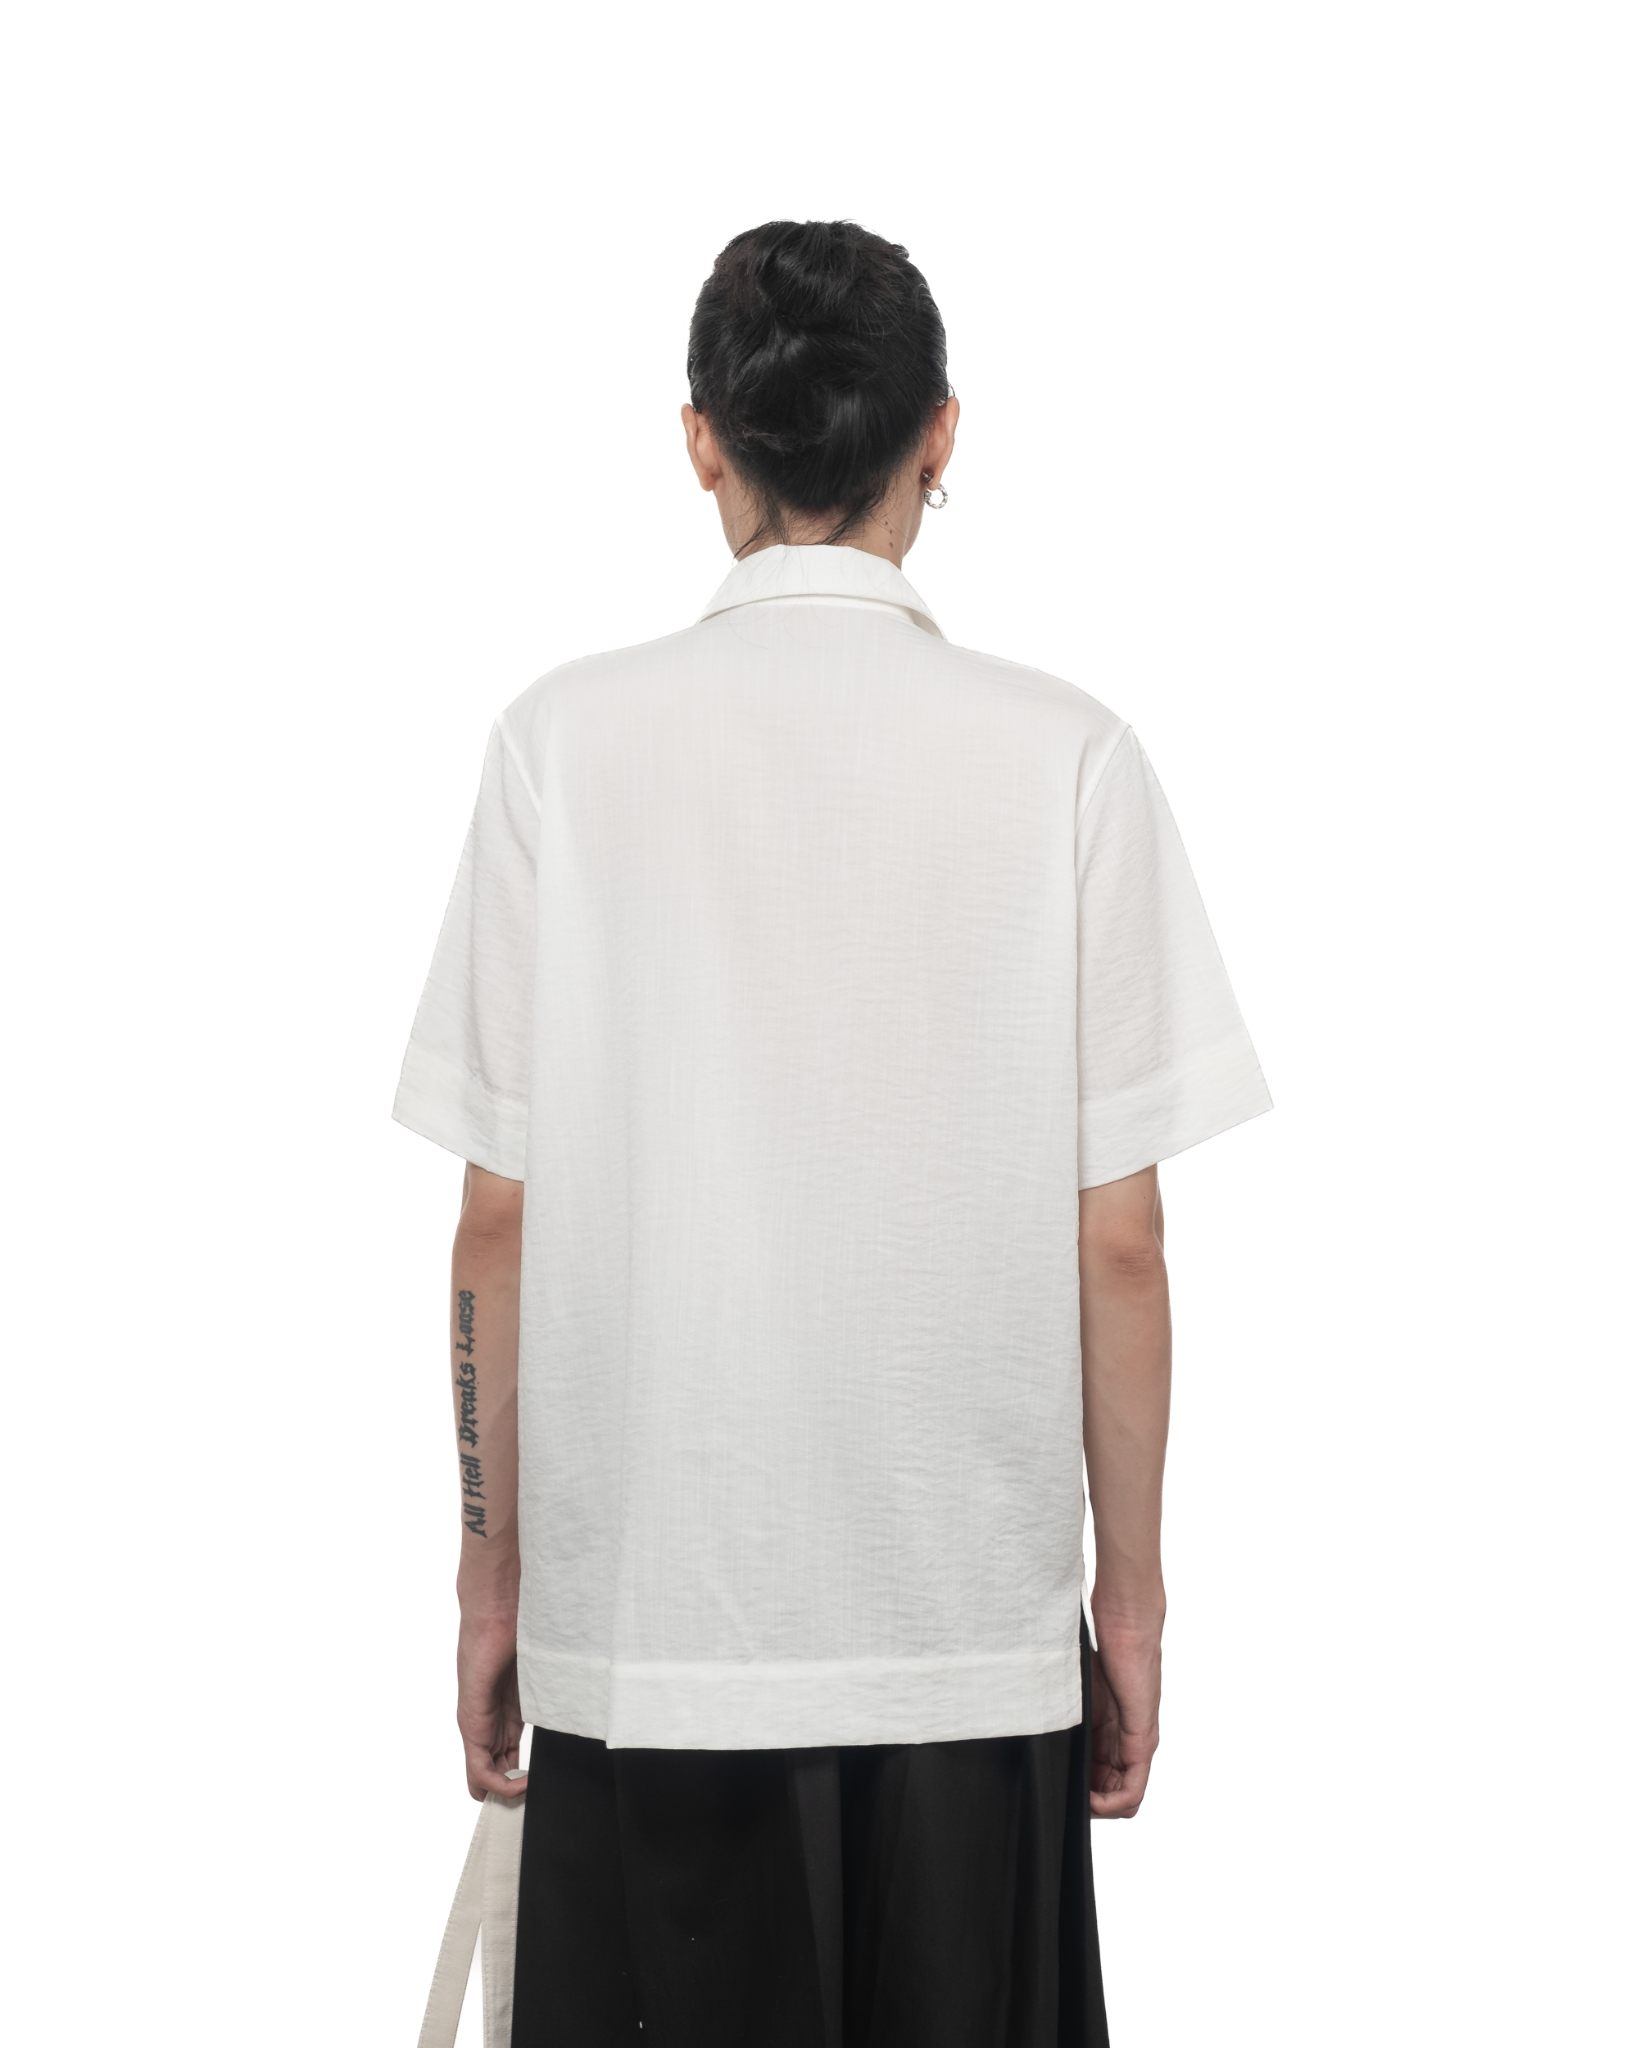  23'HighLow shirt 02 (White) 